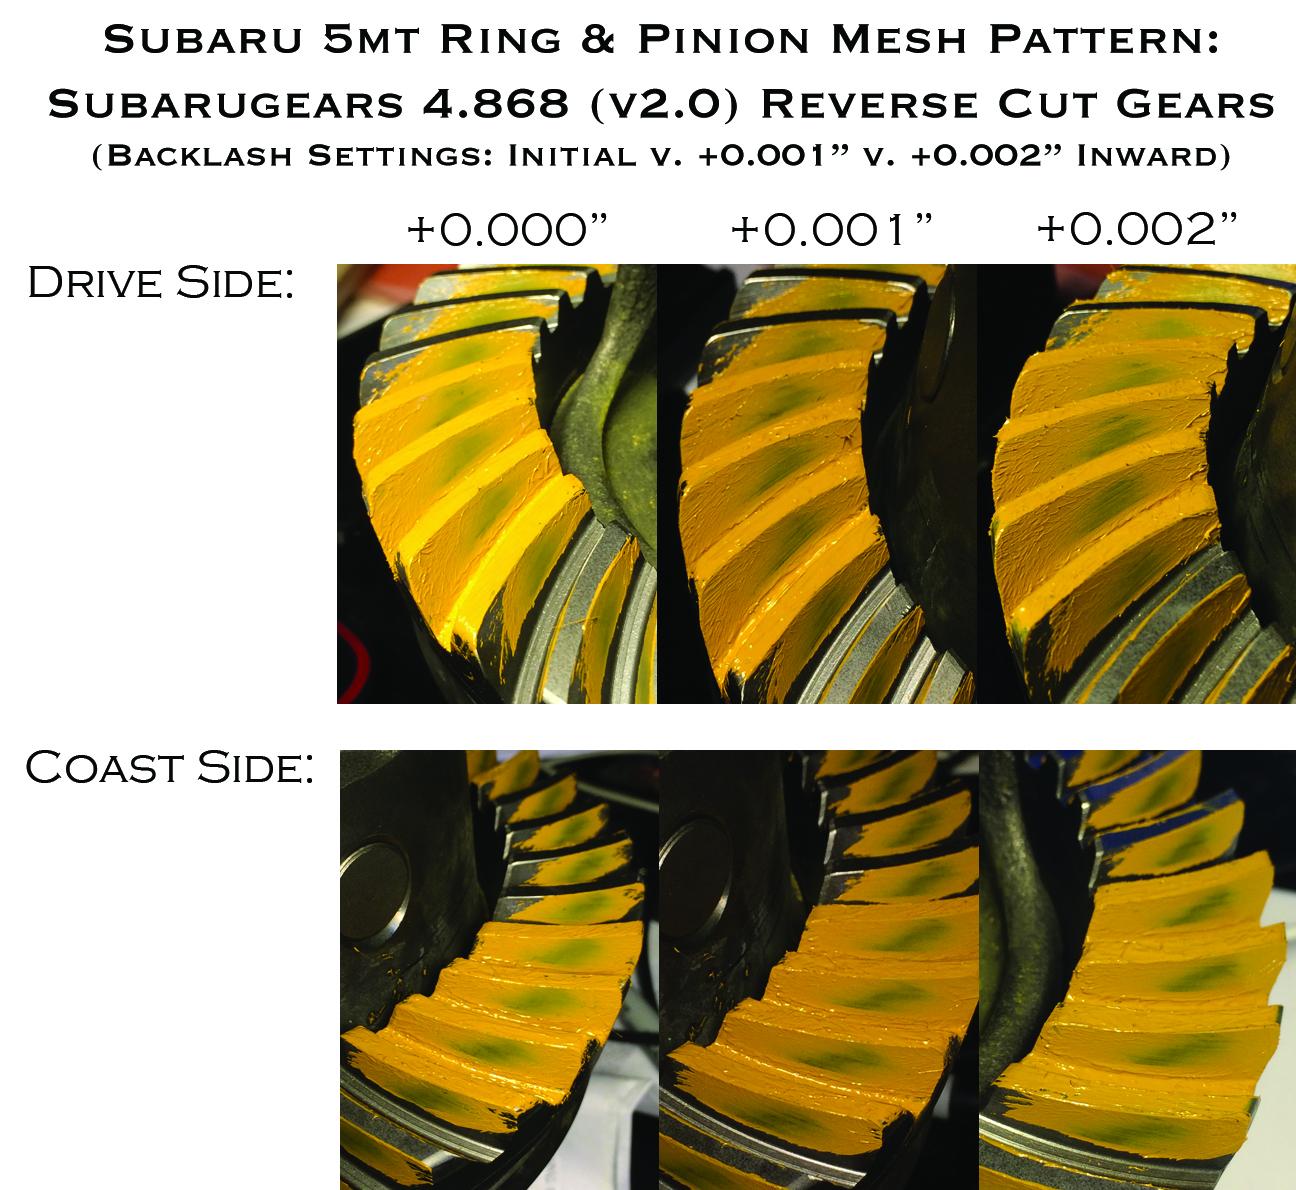 Ring & Pinion Patterns explained, back lash vs pinion depth - YouTube